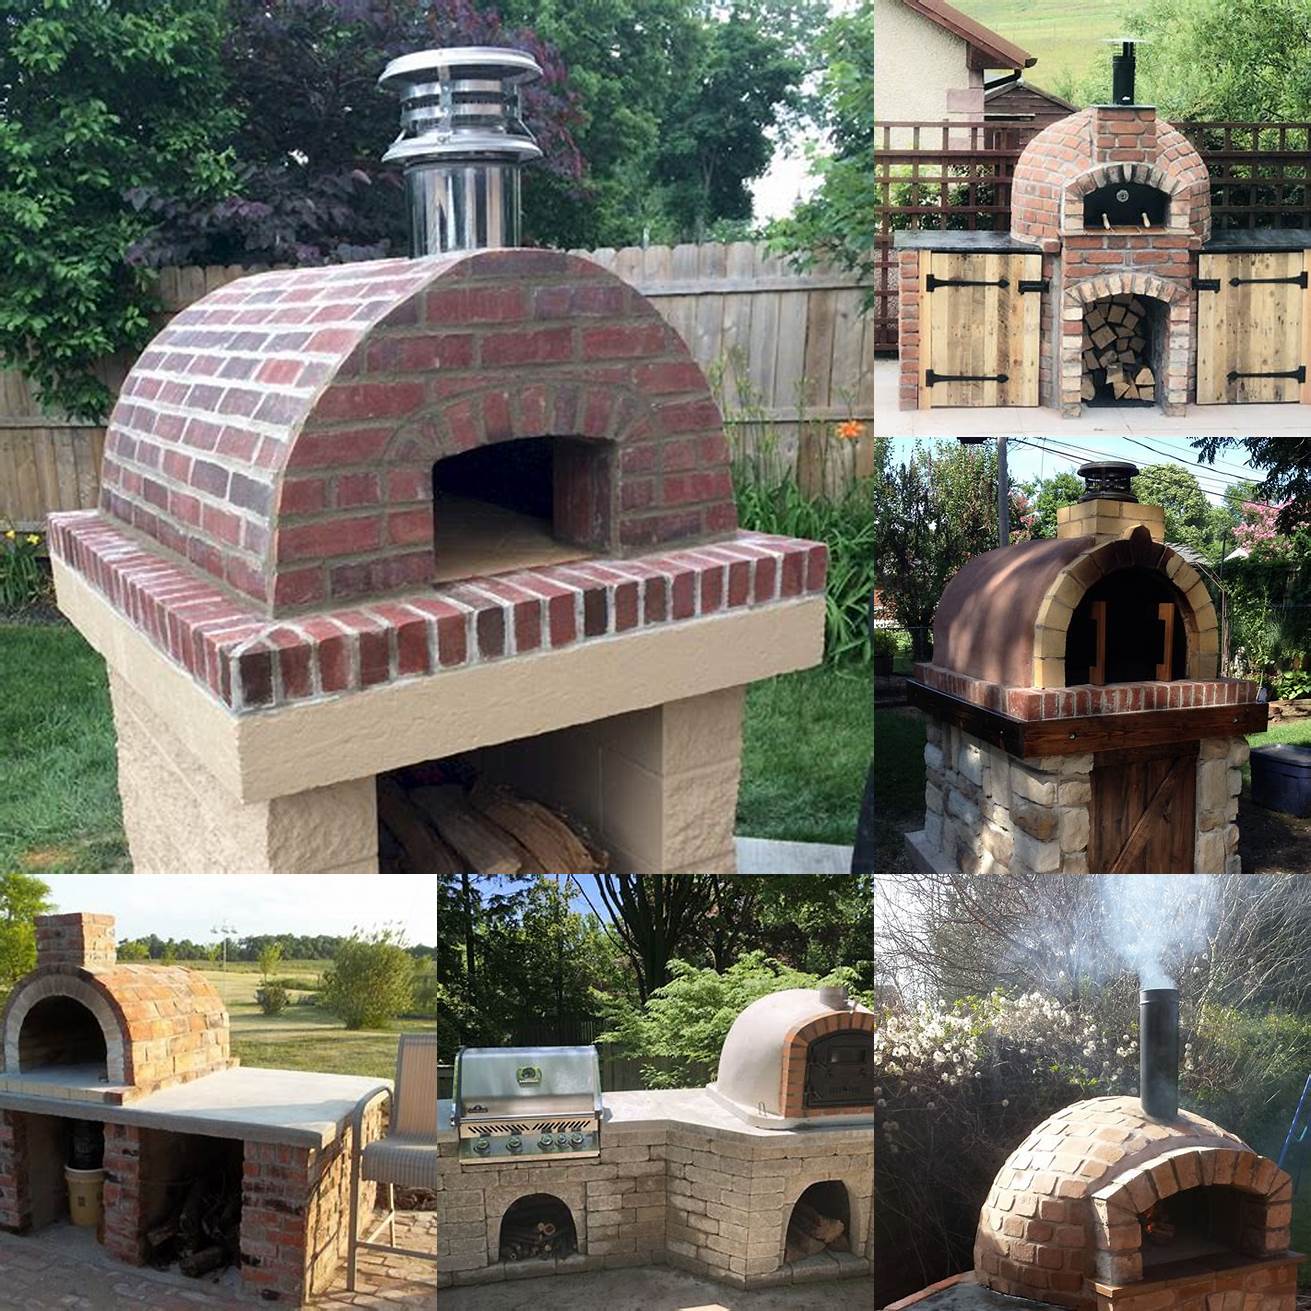 3 Brick pizza oven